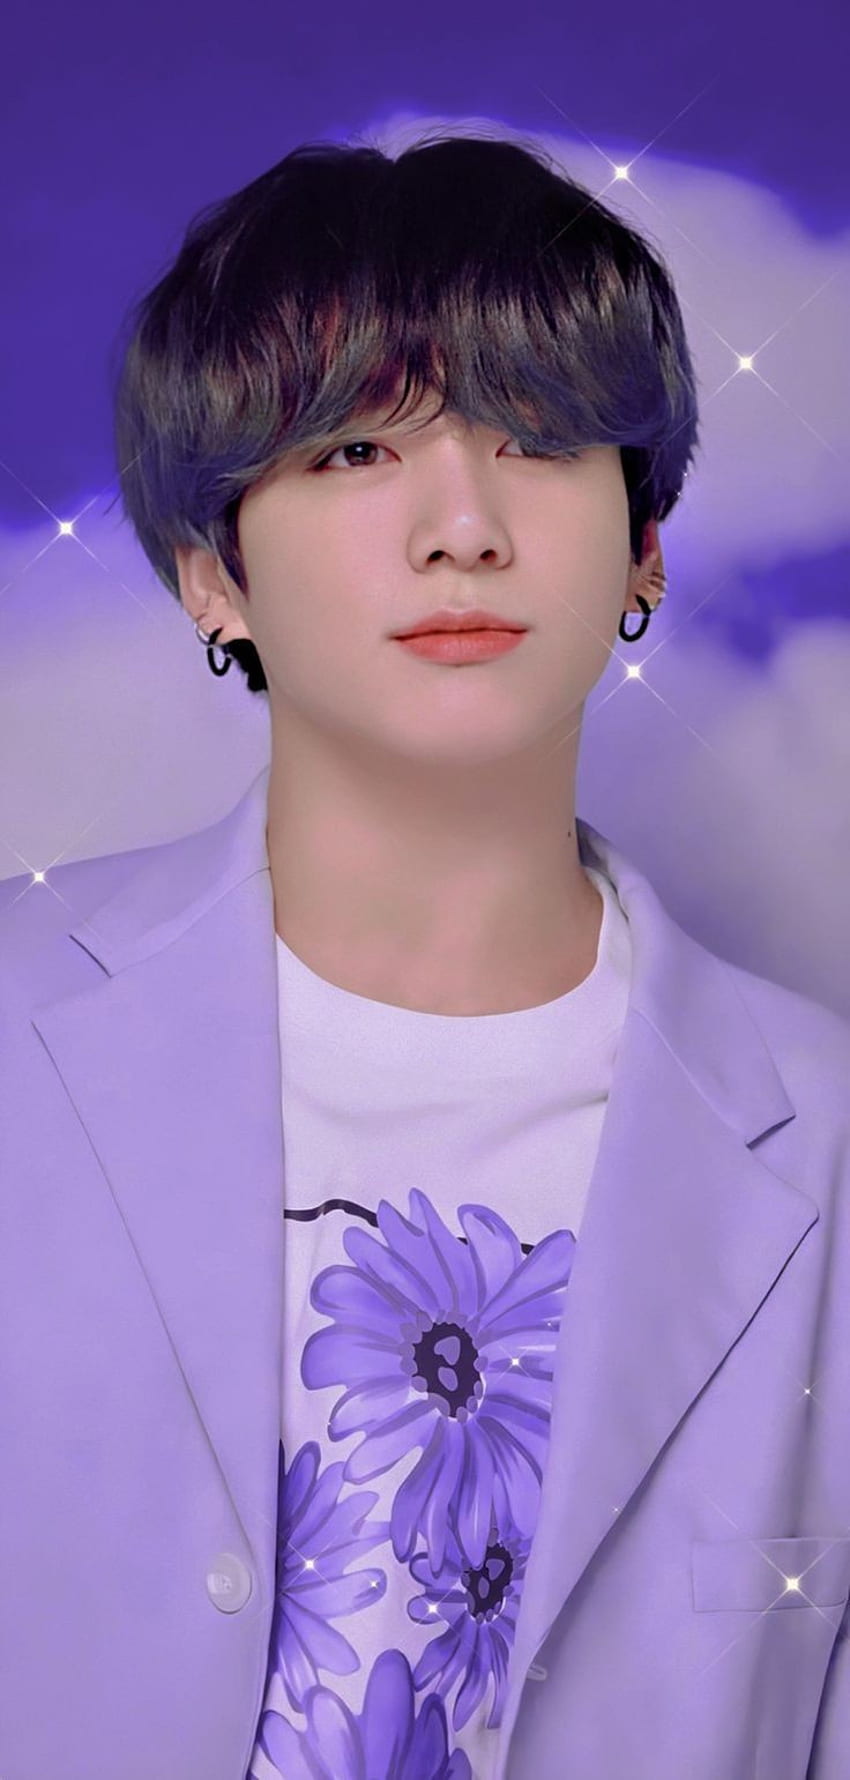 Jungkook, BTS, face, purple, cute HD phone wallpaper | Pxfuel